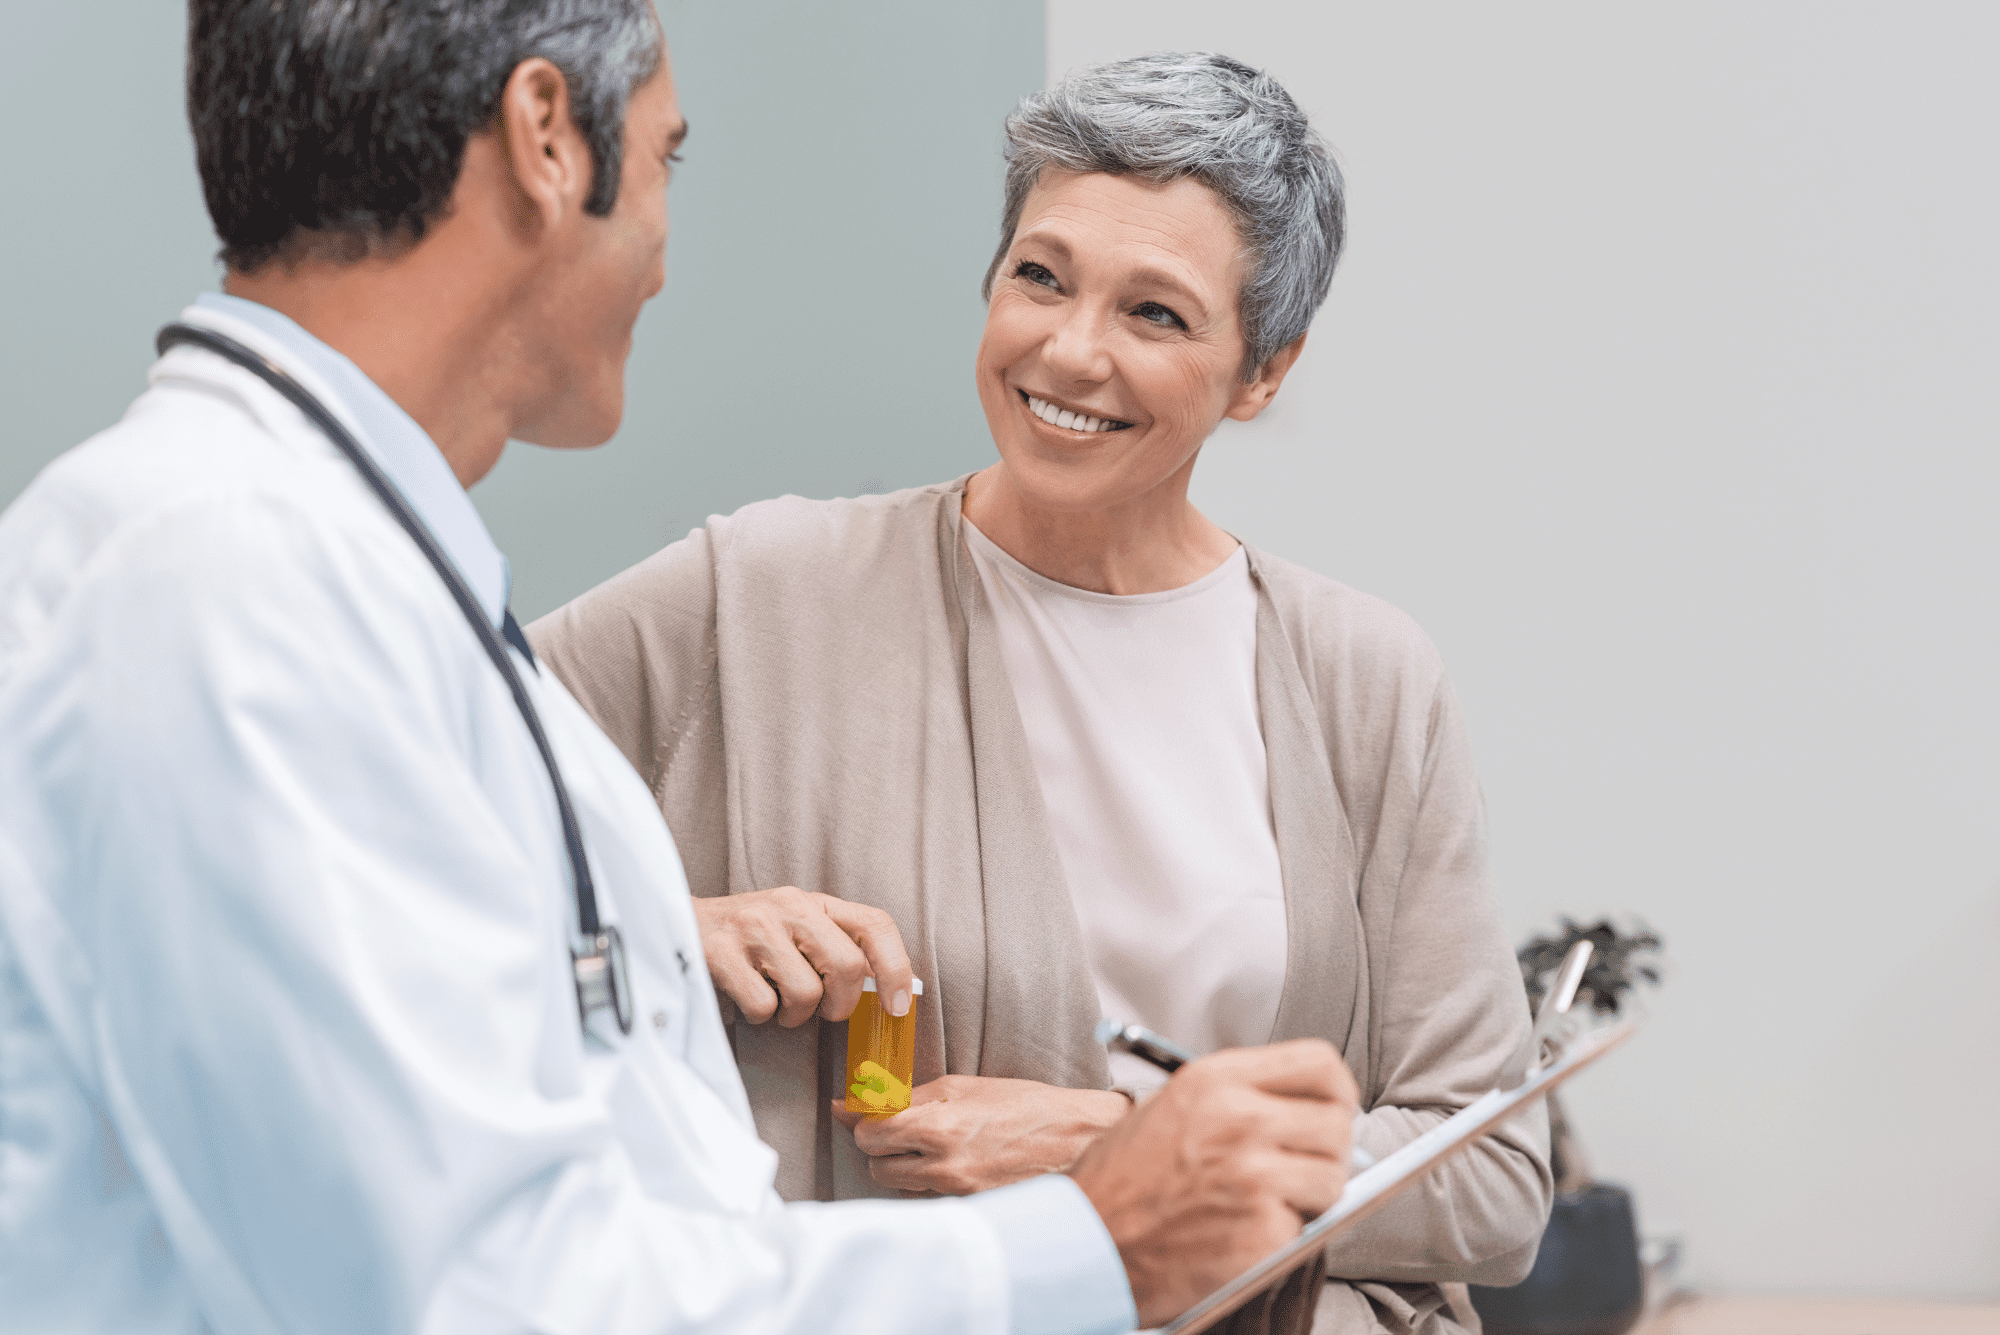 5 Essential Medicare Lessons for Concierge Medicine